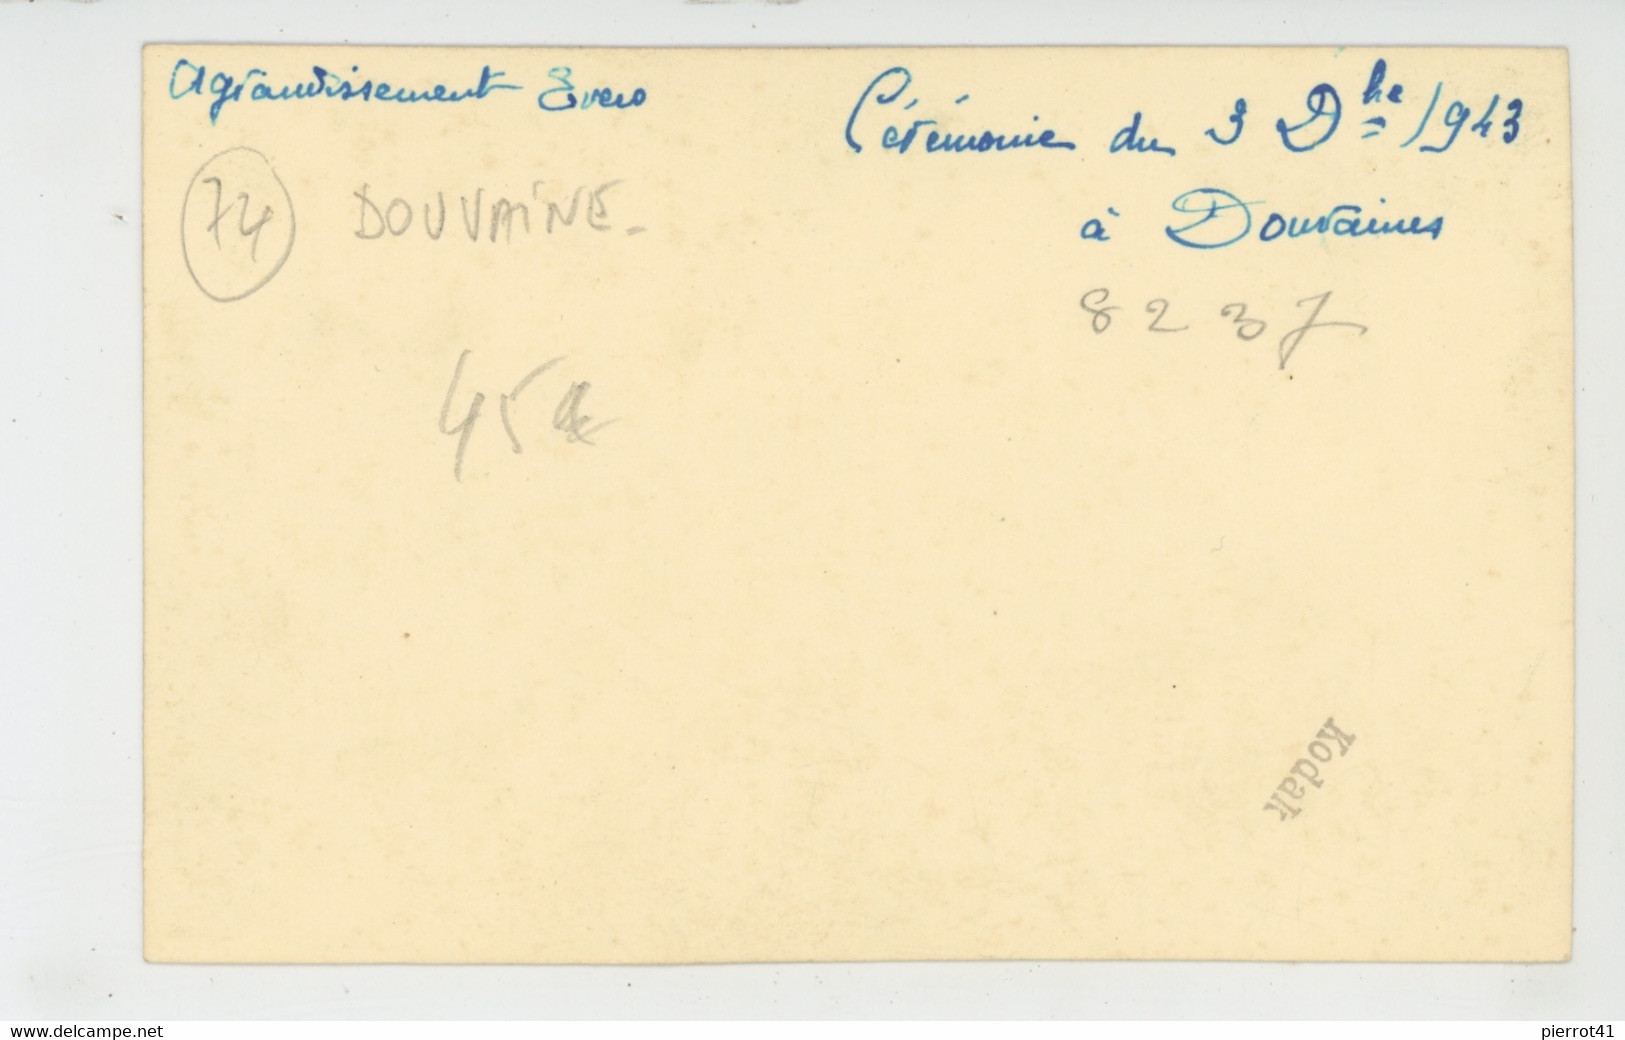 DOUVAINE - Beau Cliché Cérémonie Du 3 Décembre 1943 Devant Le Monument Aux Morts à DUVAINE - Douvaine